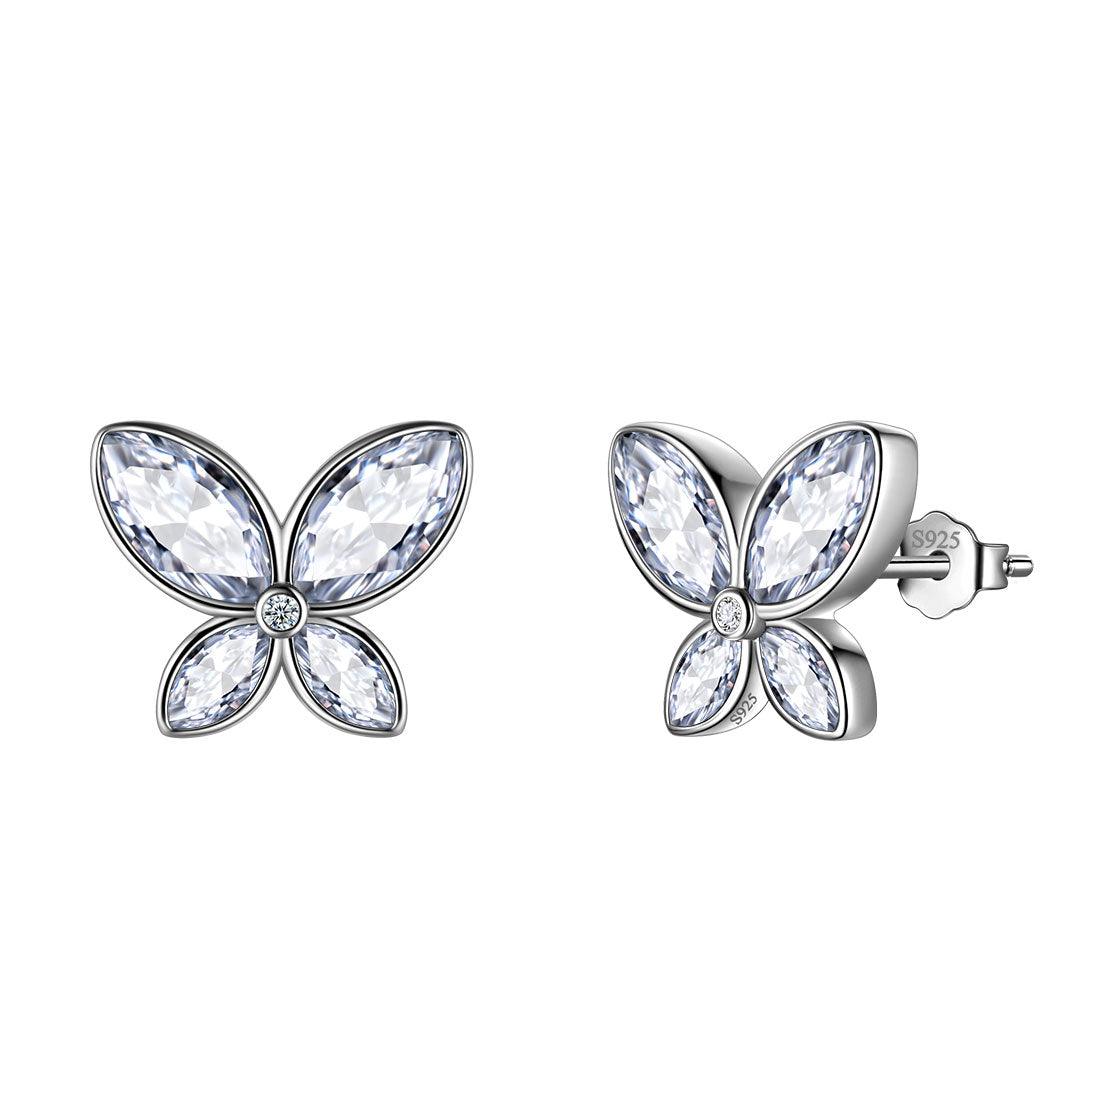 Butterfly Stud Earrings Birthstone April Diamond - Earrings - Aurora Tears